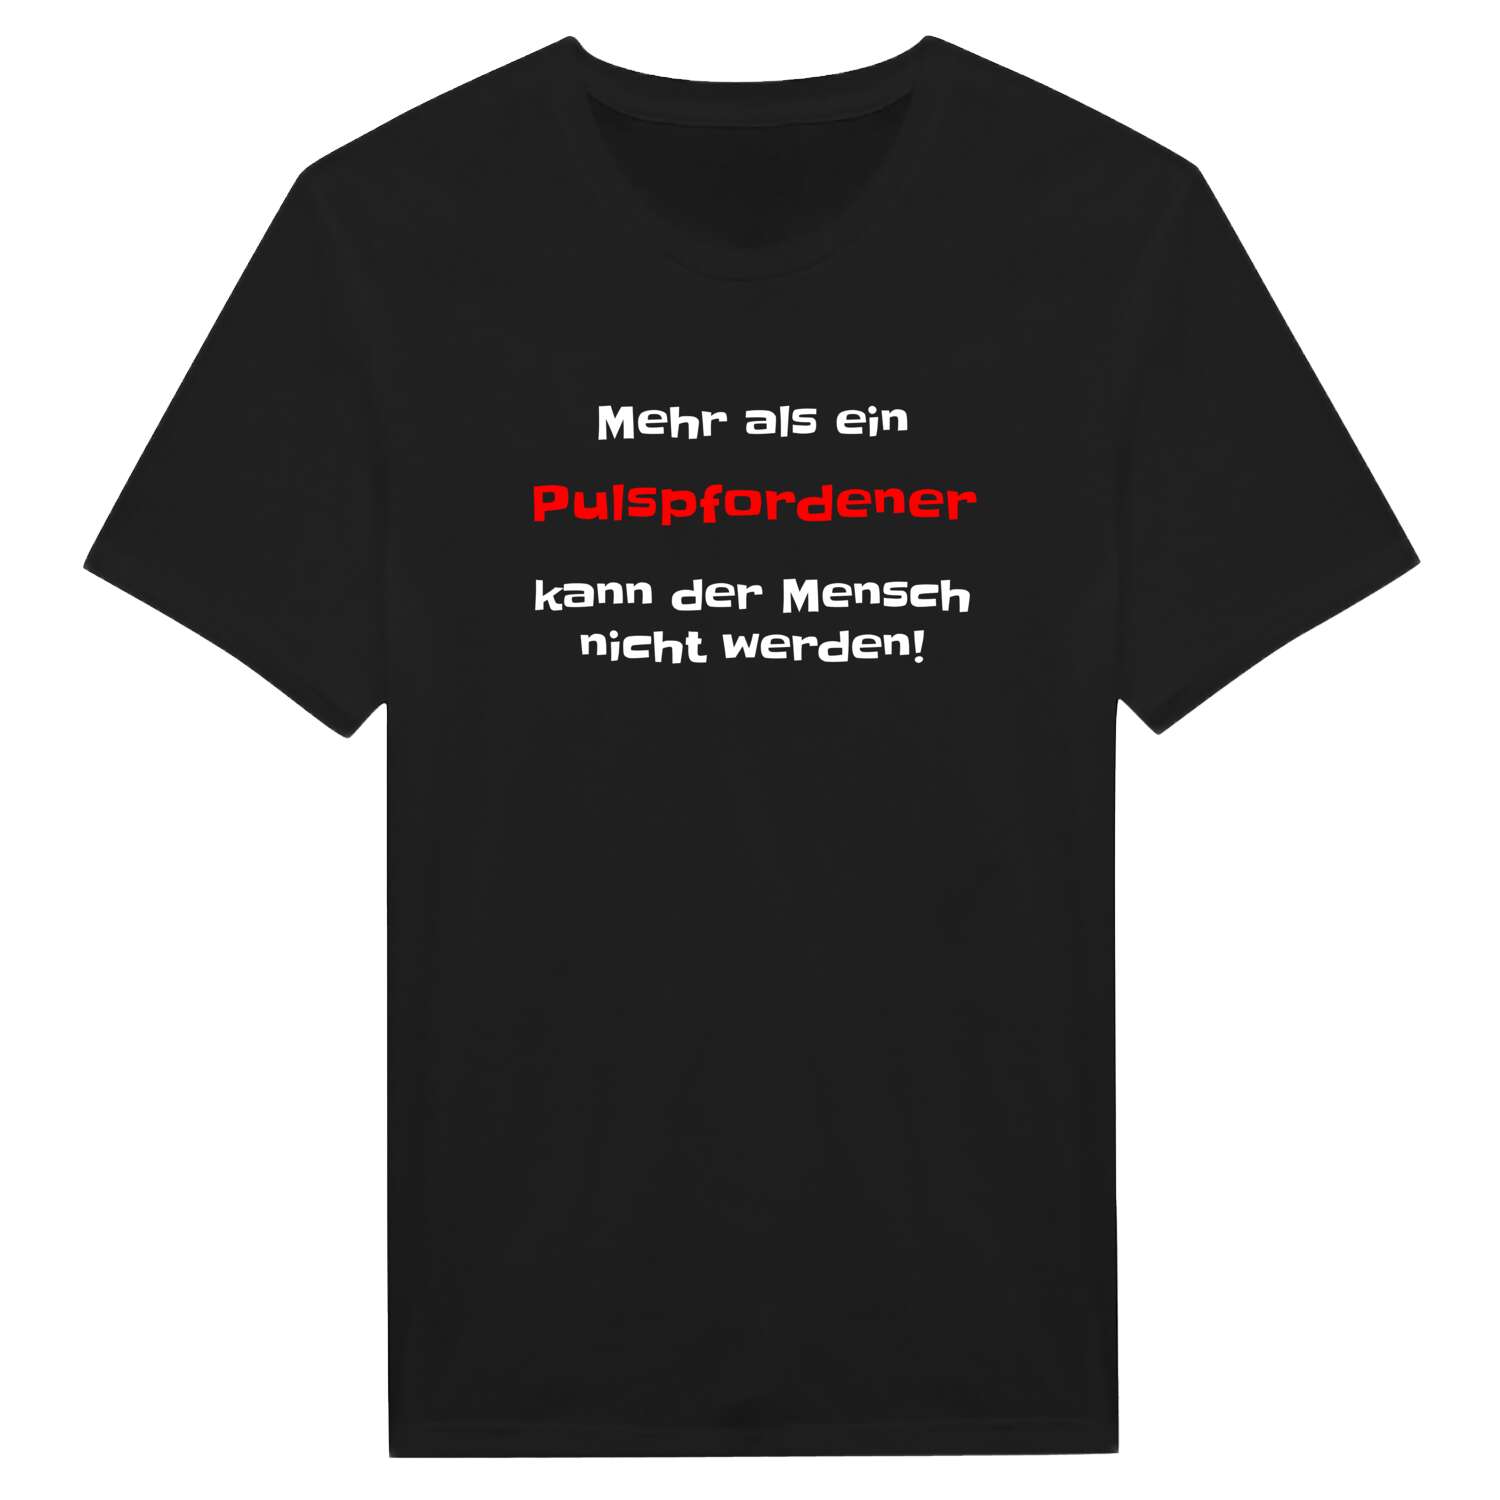 Pulspforde T-Shirt »Mehr als ein«